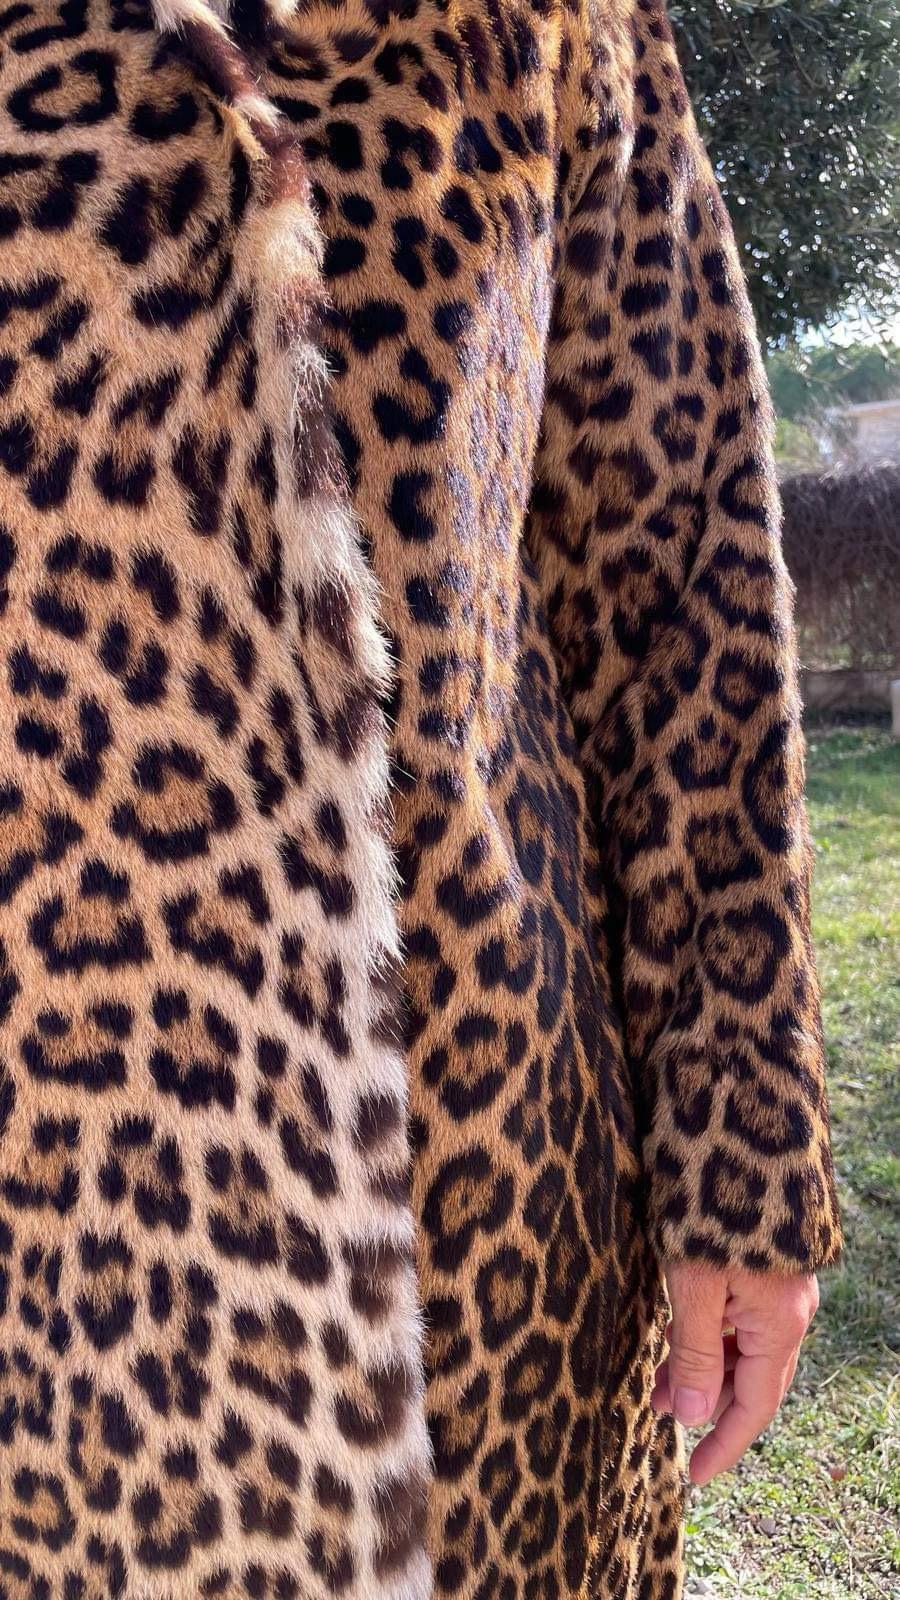 Mint Vintage Leopard fur coat size 12 For Sale 1